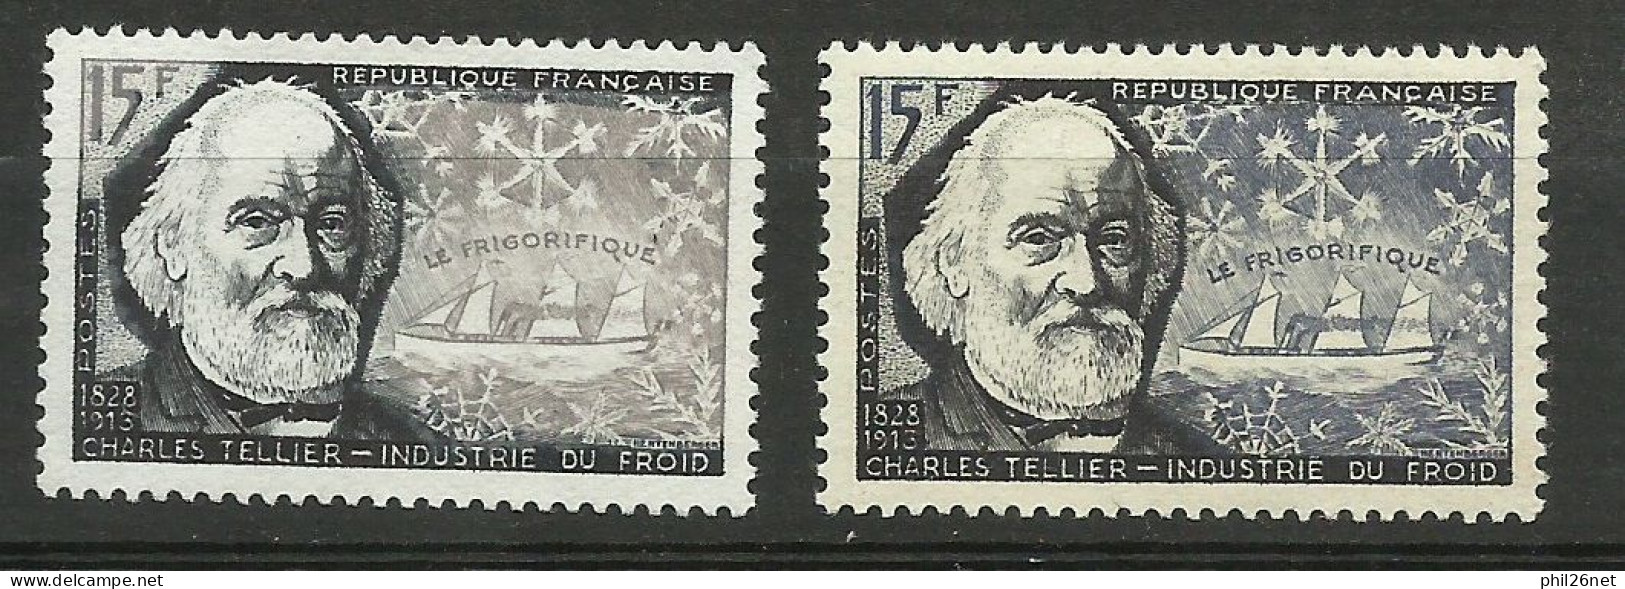 France N°1056  Charles Tellier Navire Frigo Noir   Neuf  ( * )  B/TB  Le 1056  Type Pour Comparer Voir Scans Soldé ! ! ! - Unused Stamps